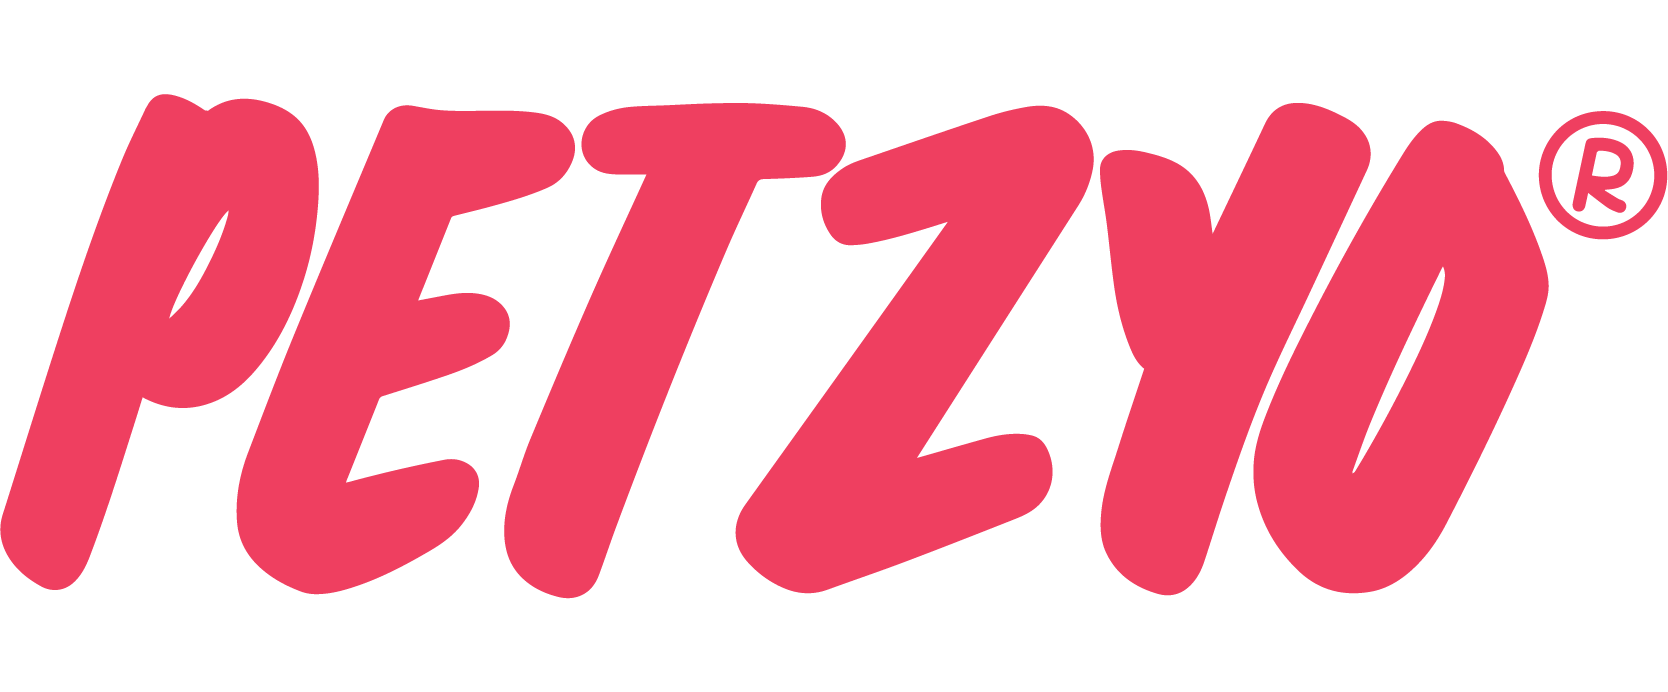 Petzyo FAQ's logo